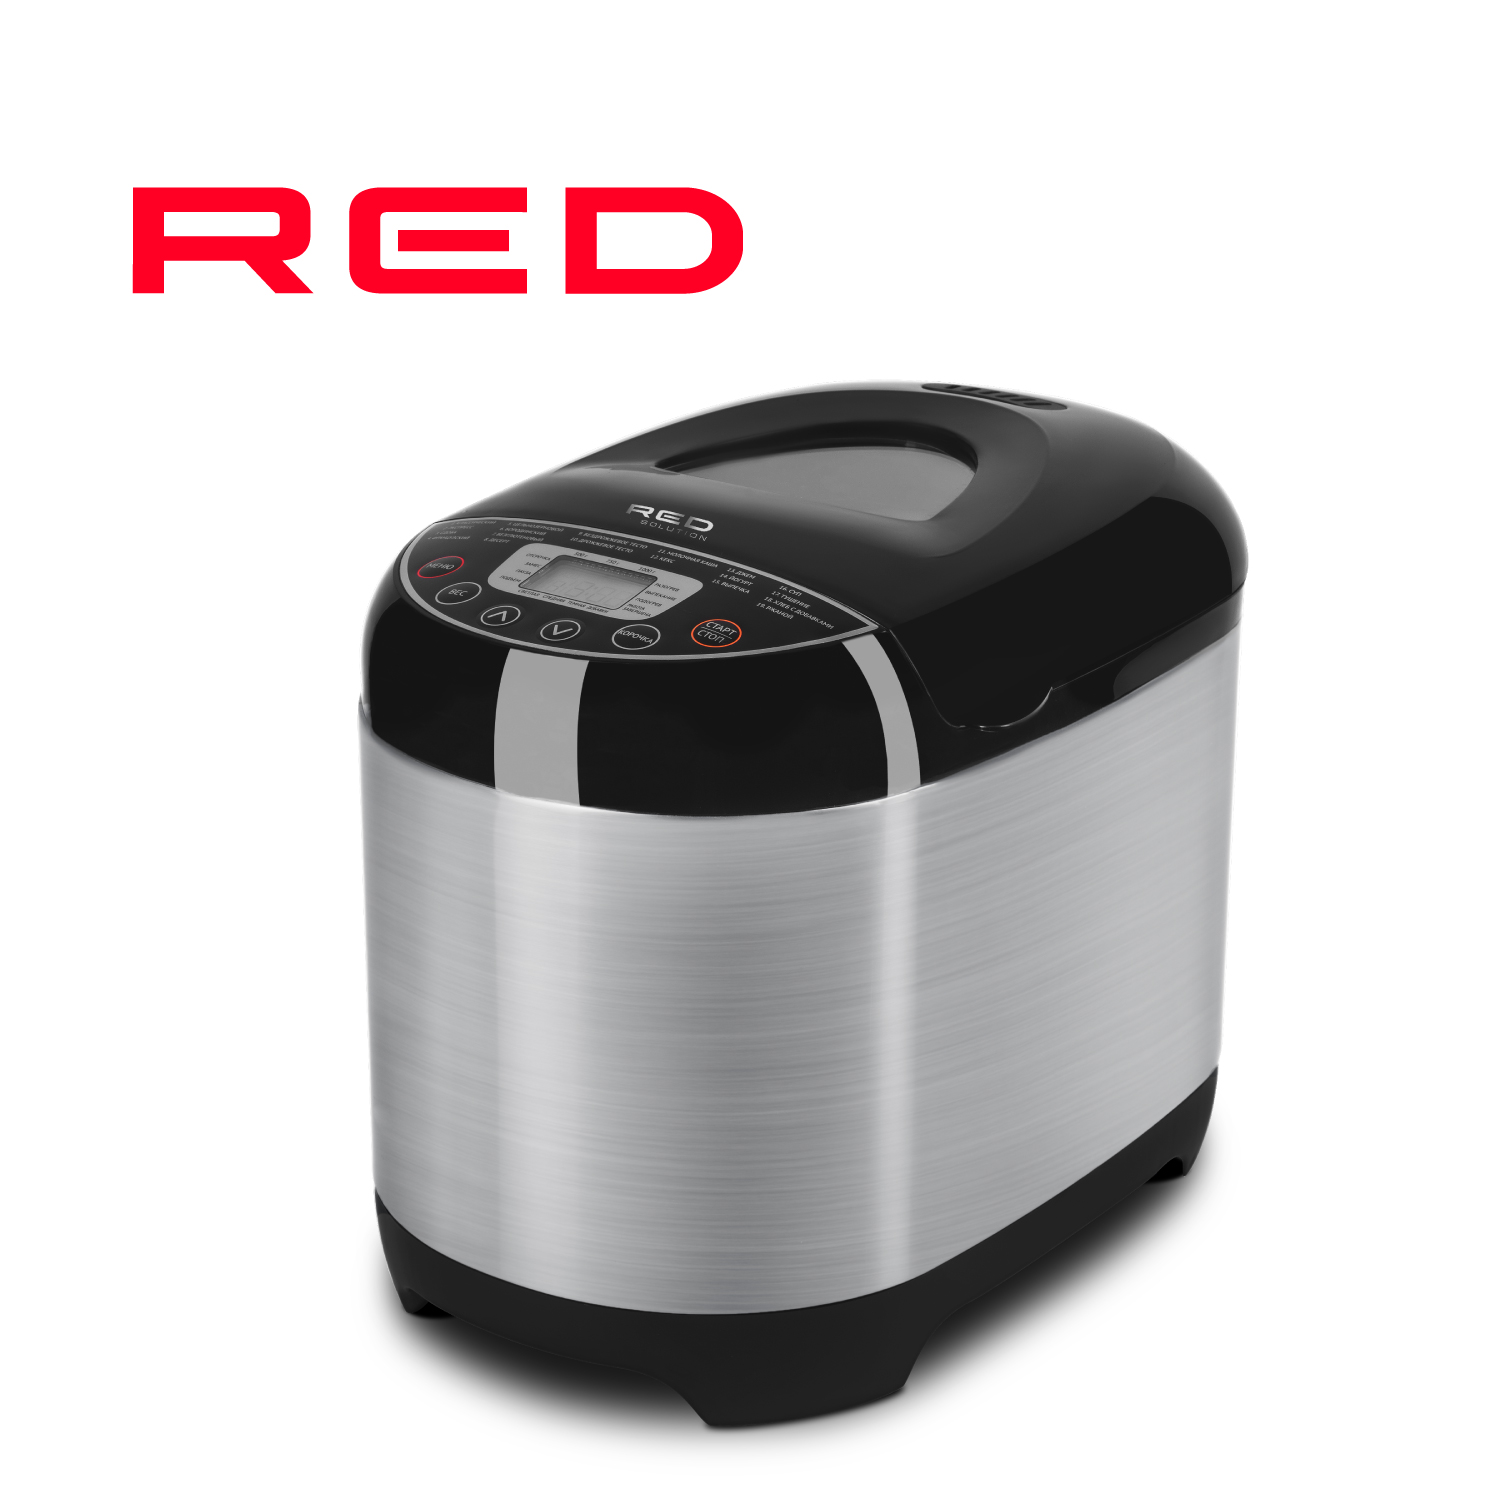 Хлебопечка RED SOLUTION RBM-M1911 серебристый, серый, черный тостер red solution rt m403 серебристый серый